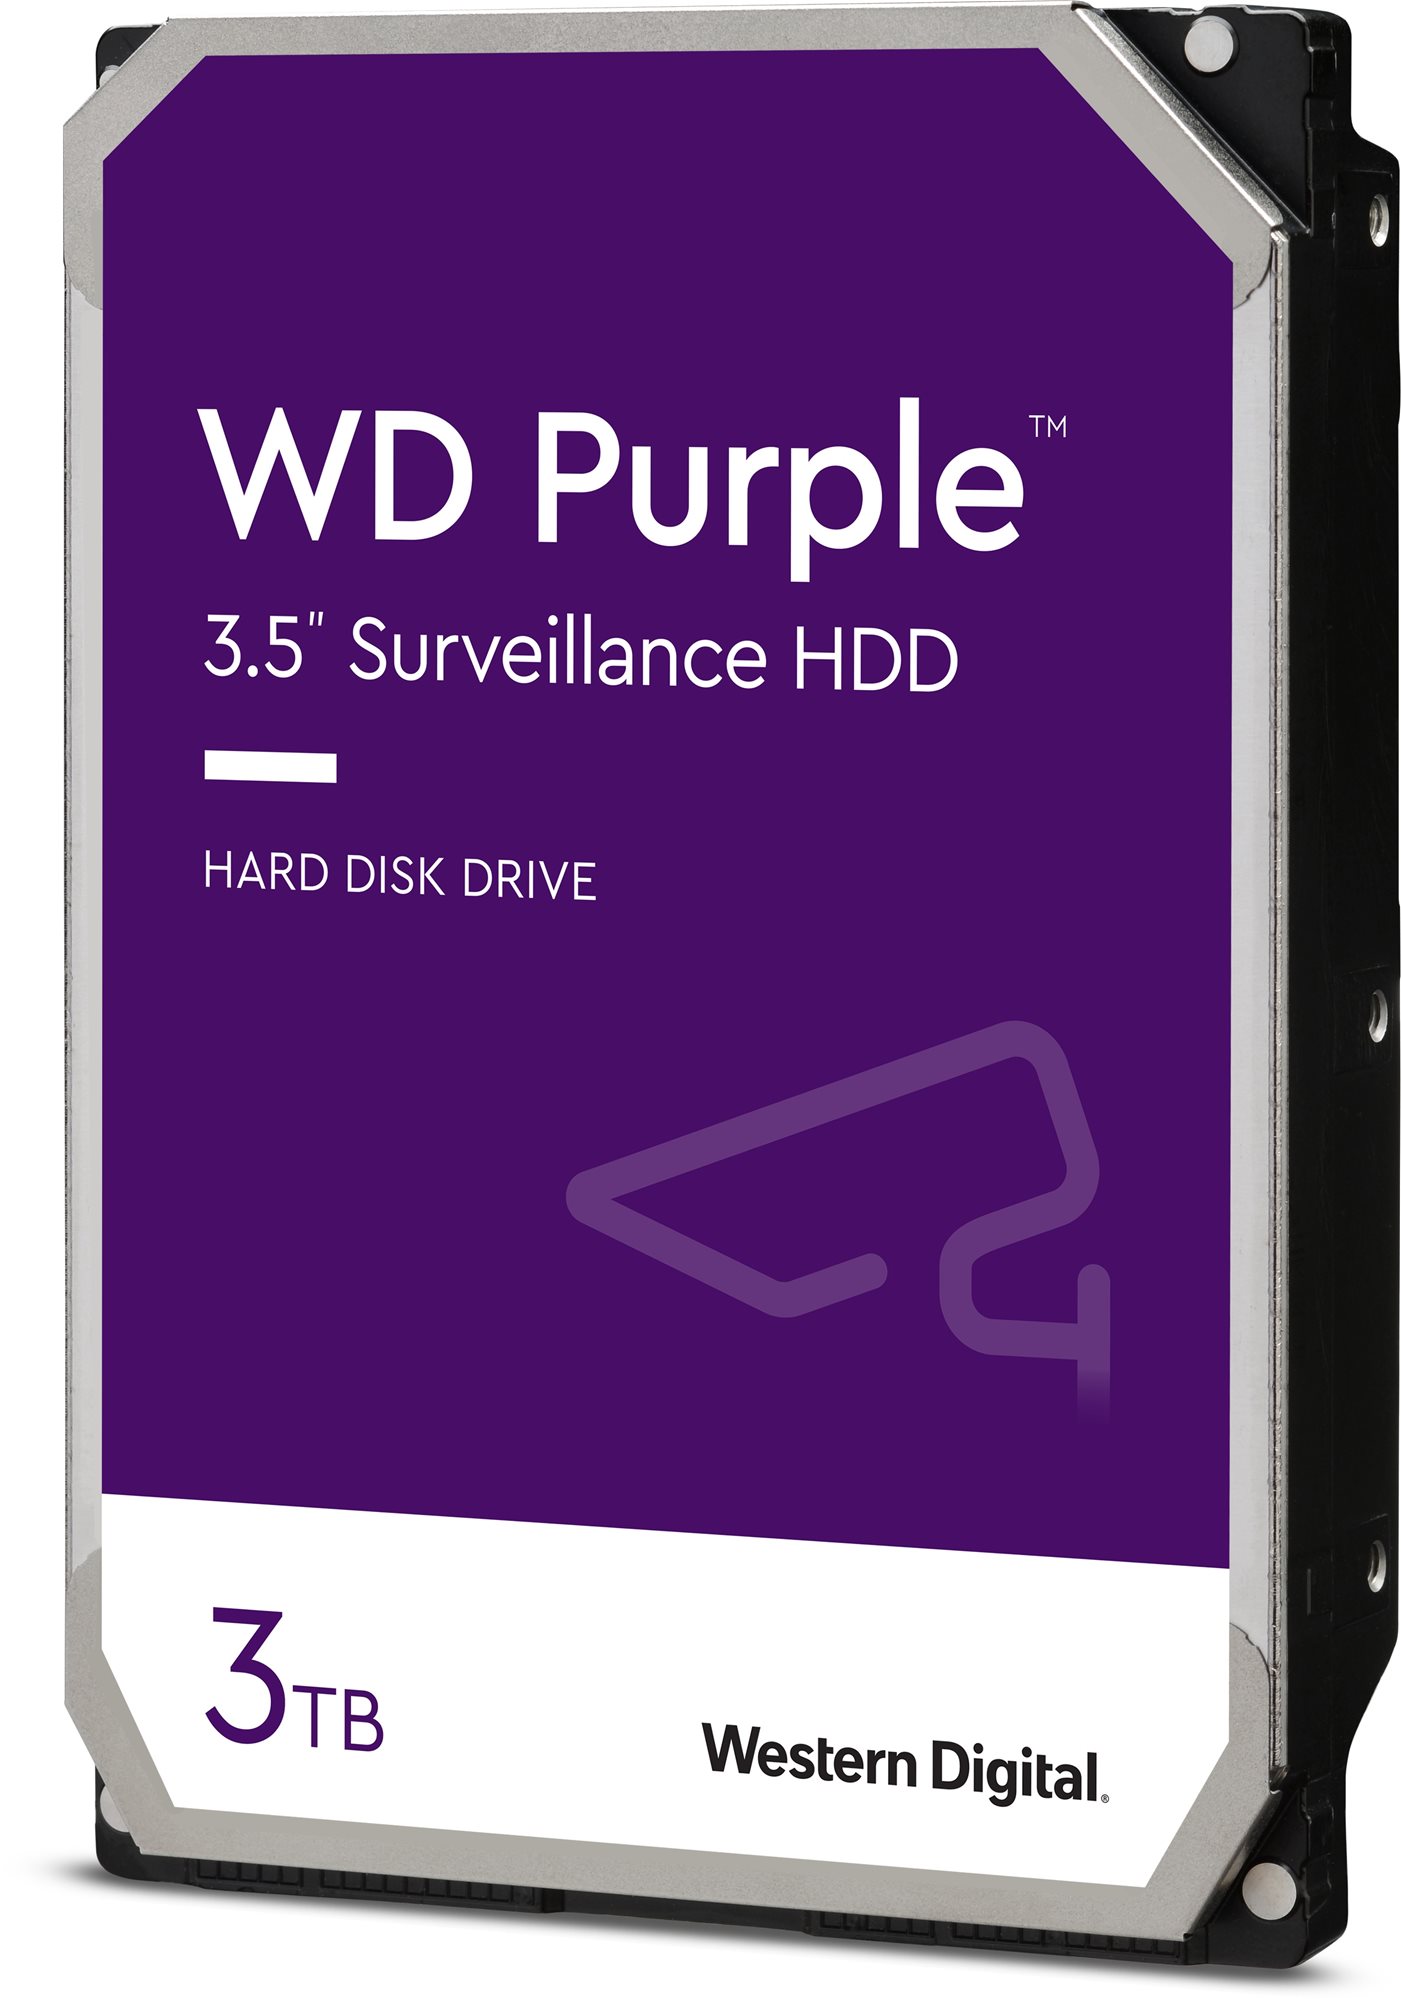 WD Purple 3 TB